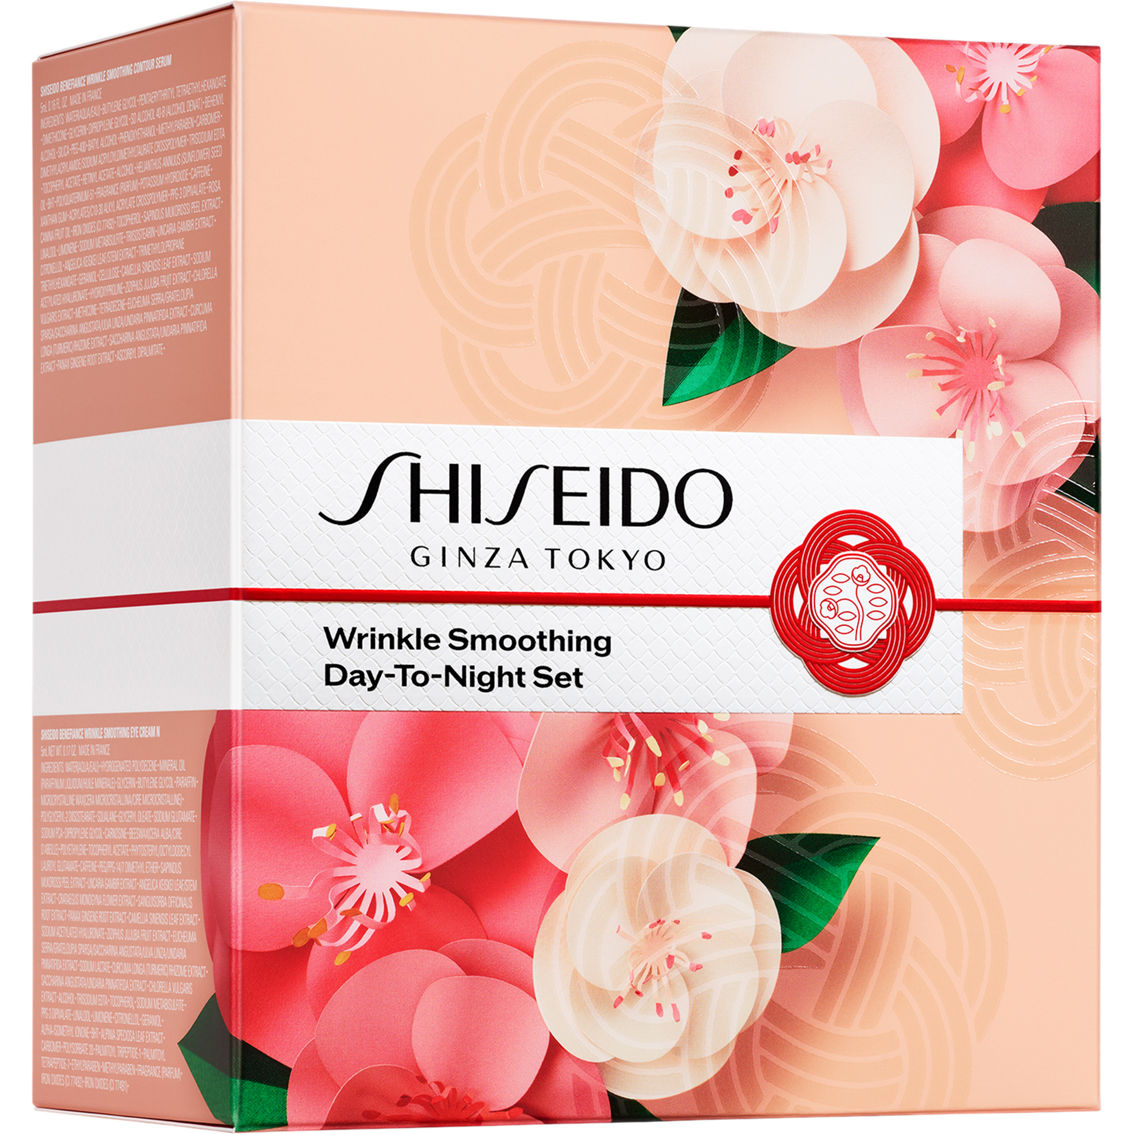 Shiseido Wrinkle Smoothing Day-To-Night Set - Image 3 of 6